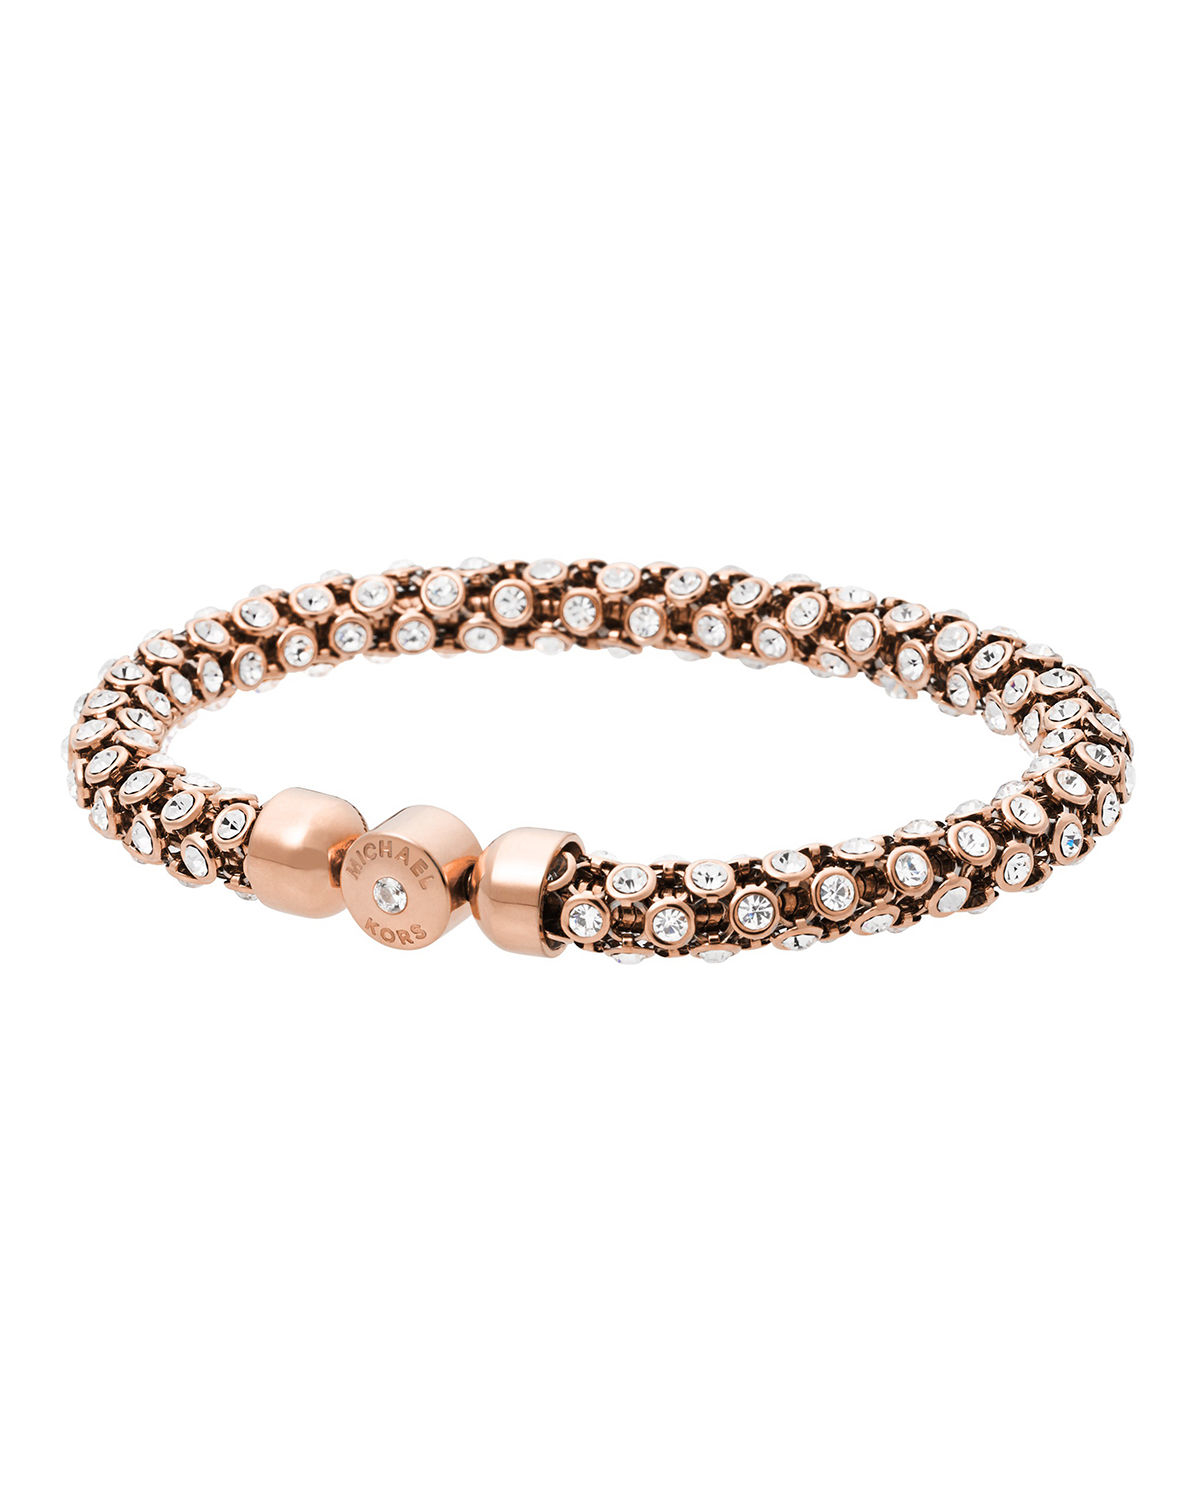 Michael Kors Park Avenue Crystal Magnet Bracelet in Rose Gold (Pink) - Lyst